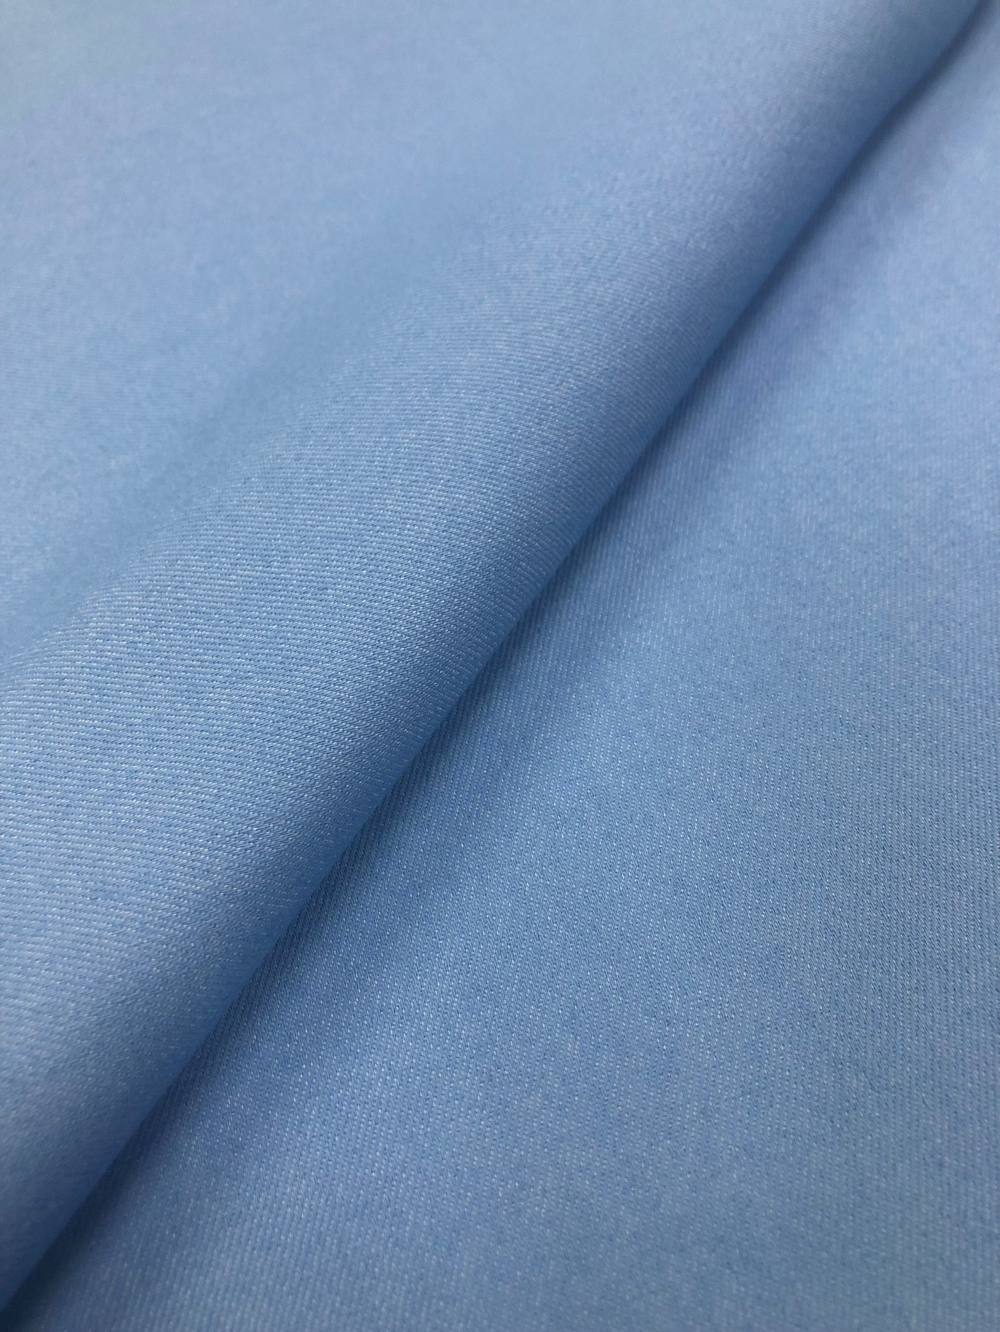 Ткань Джинса голубая светлая арт. 324725